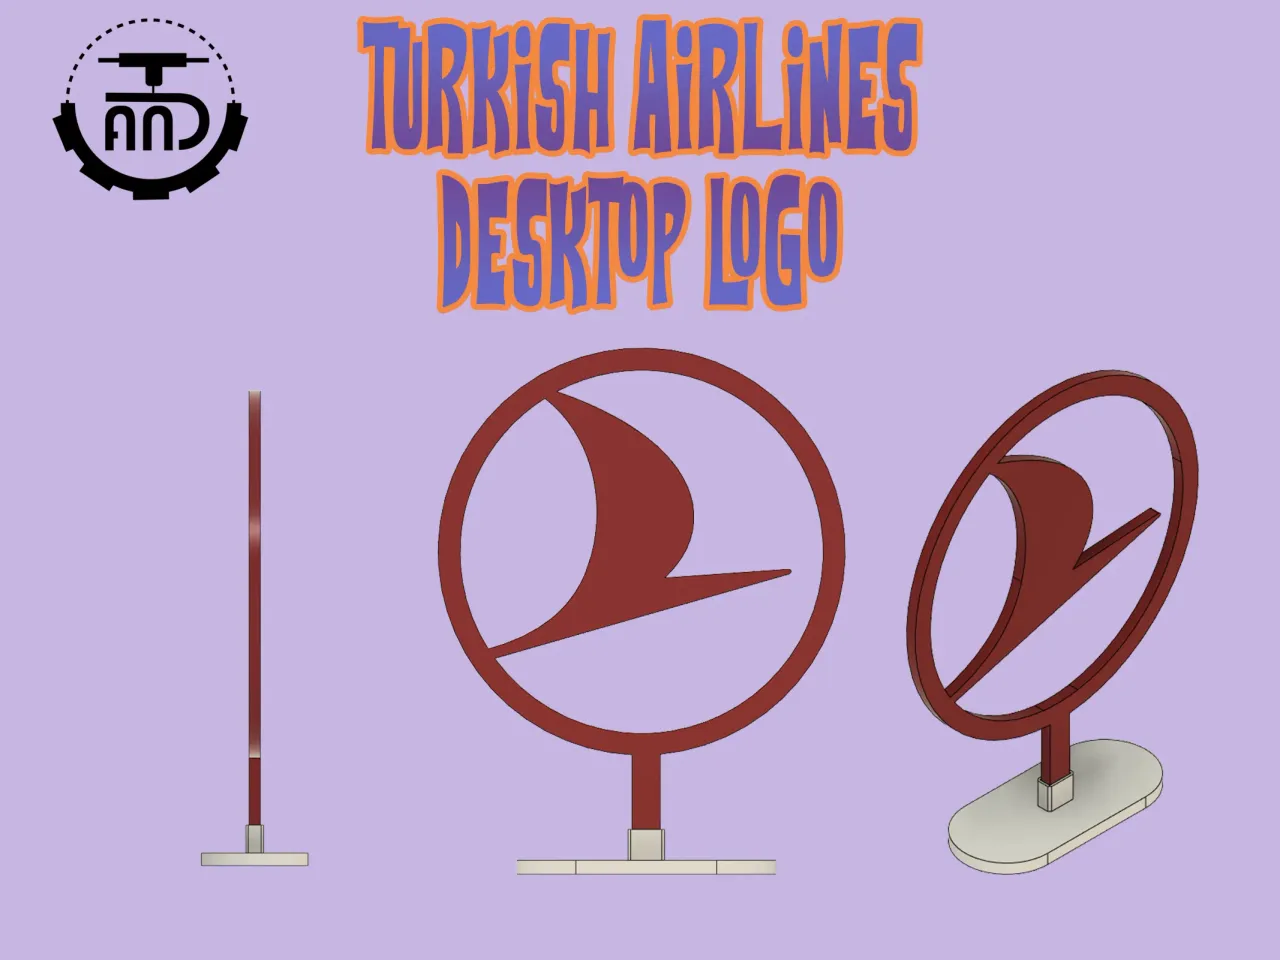 turkish airline logo